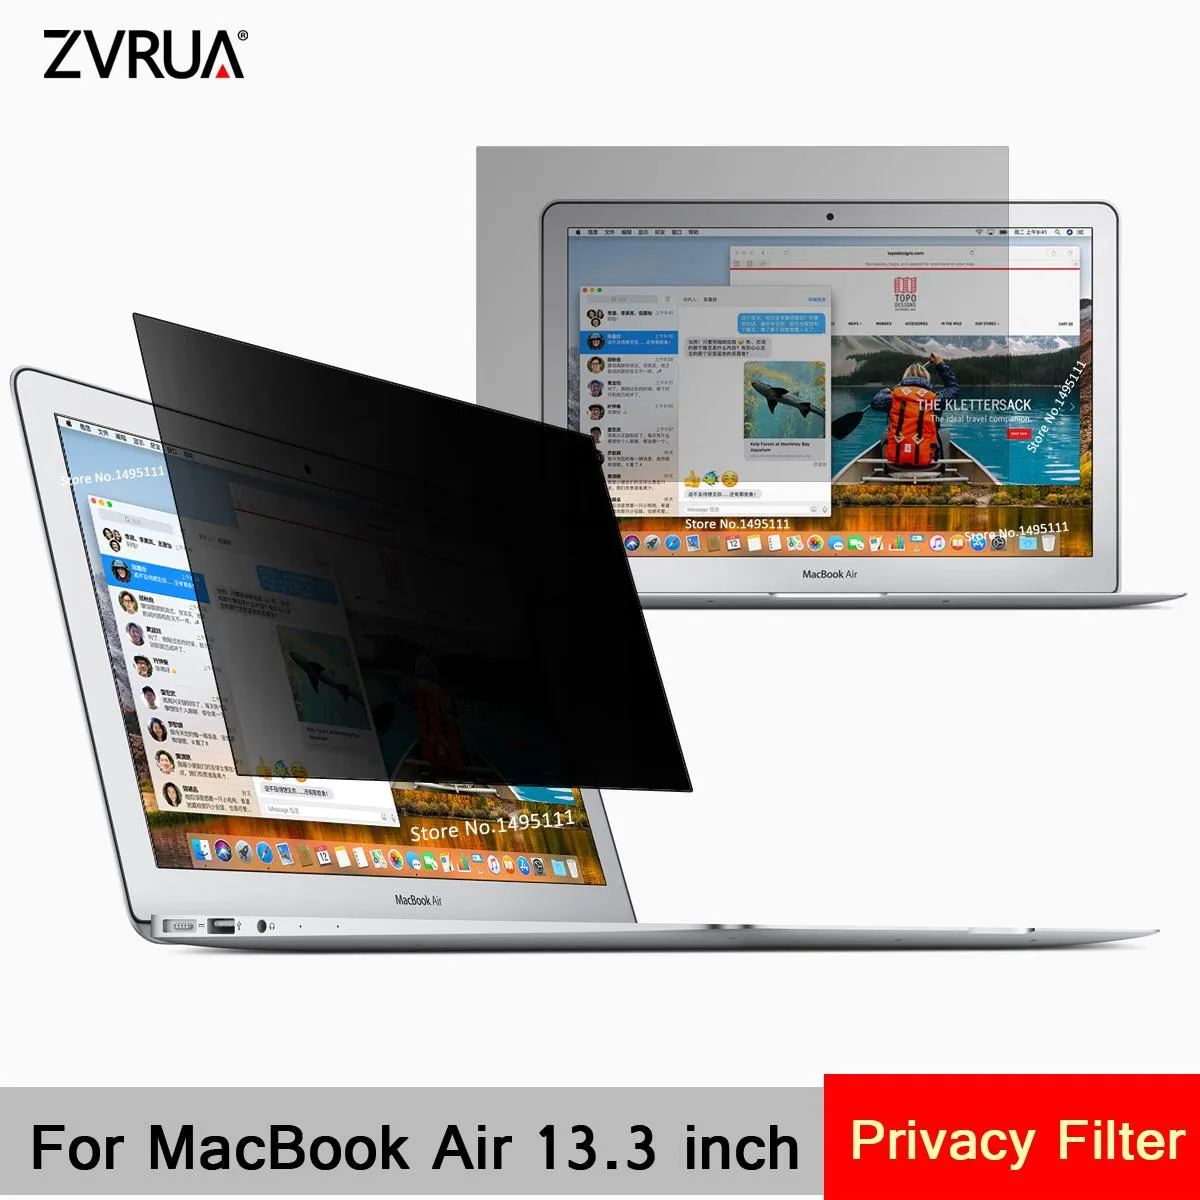 Filtres pour Apple MacBook Air 13,3 pouces (286 mm * 179 mm) Filtre de confidentialité pour ordinateur portable Antiglare Screen Protector Film